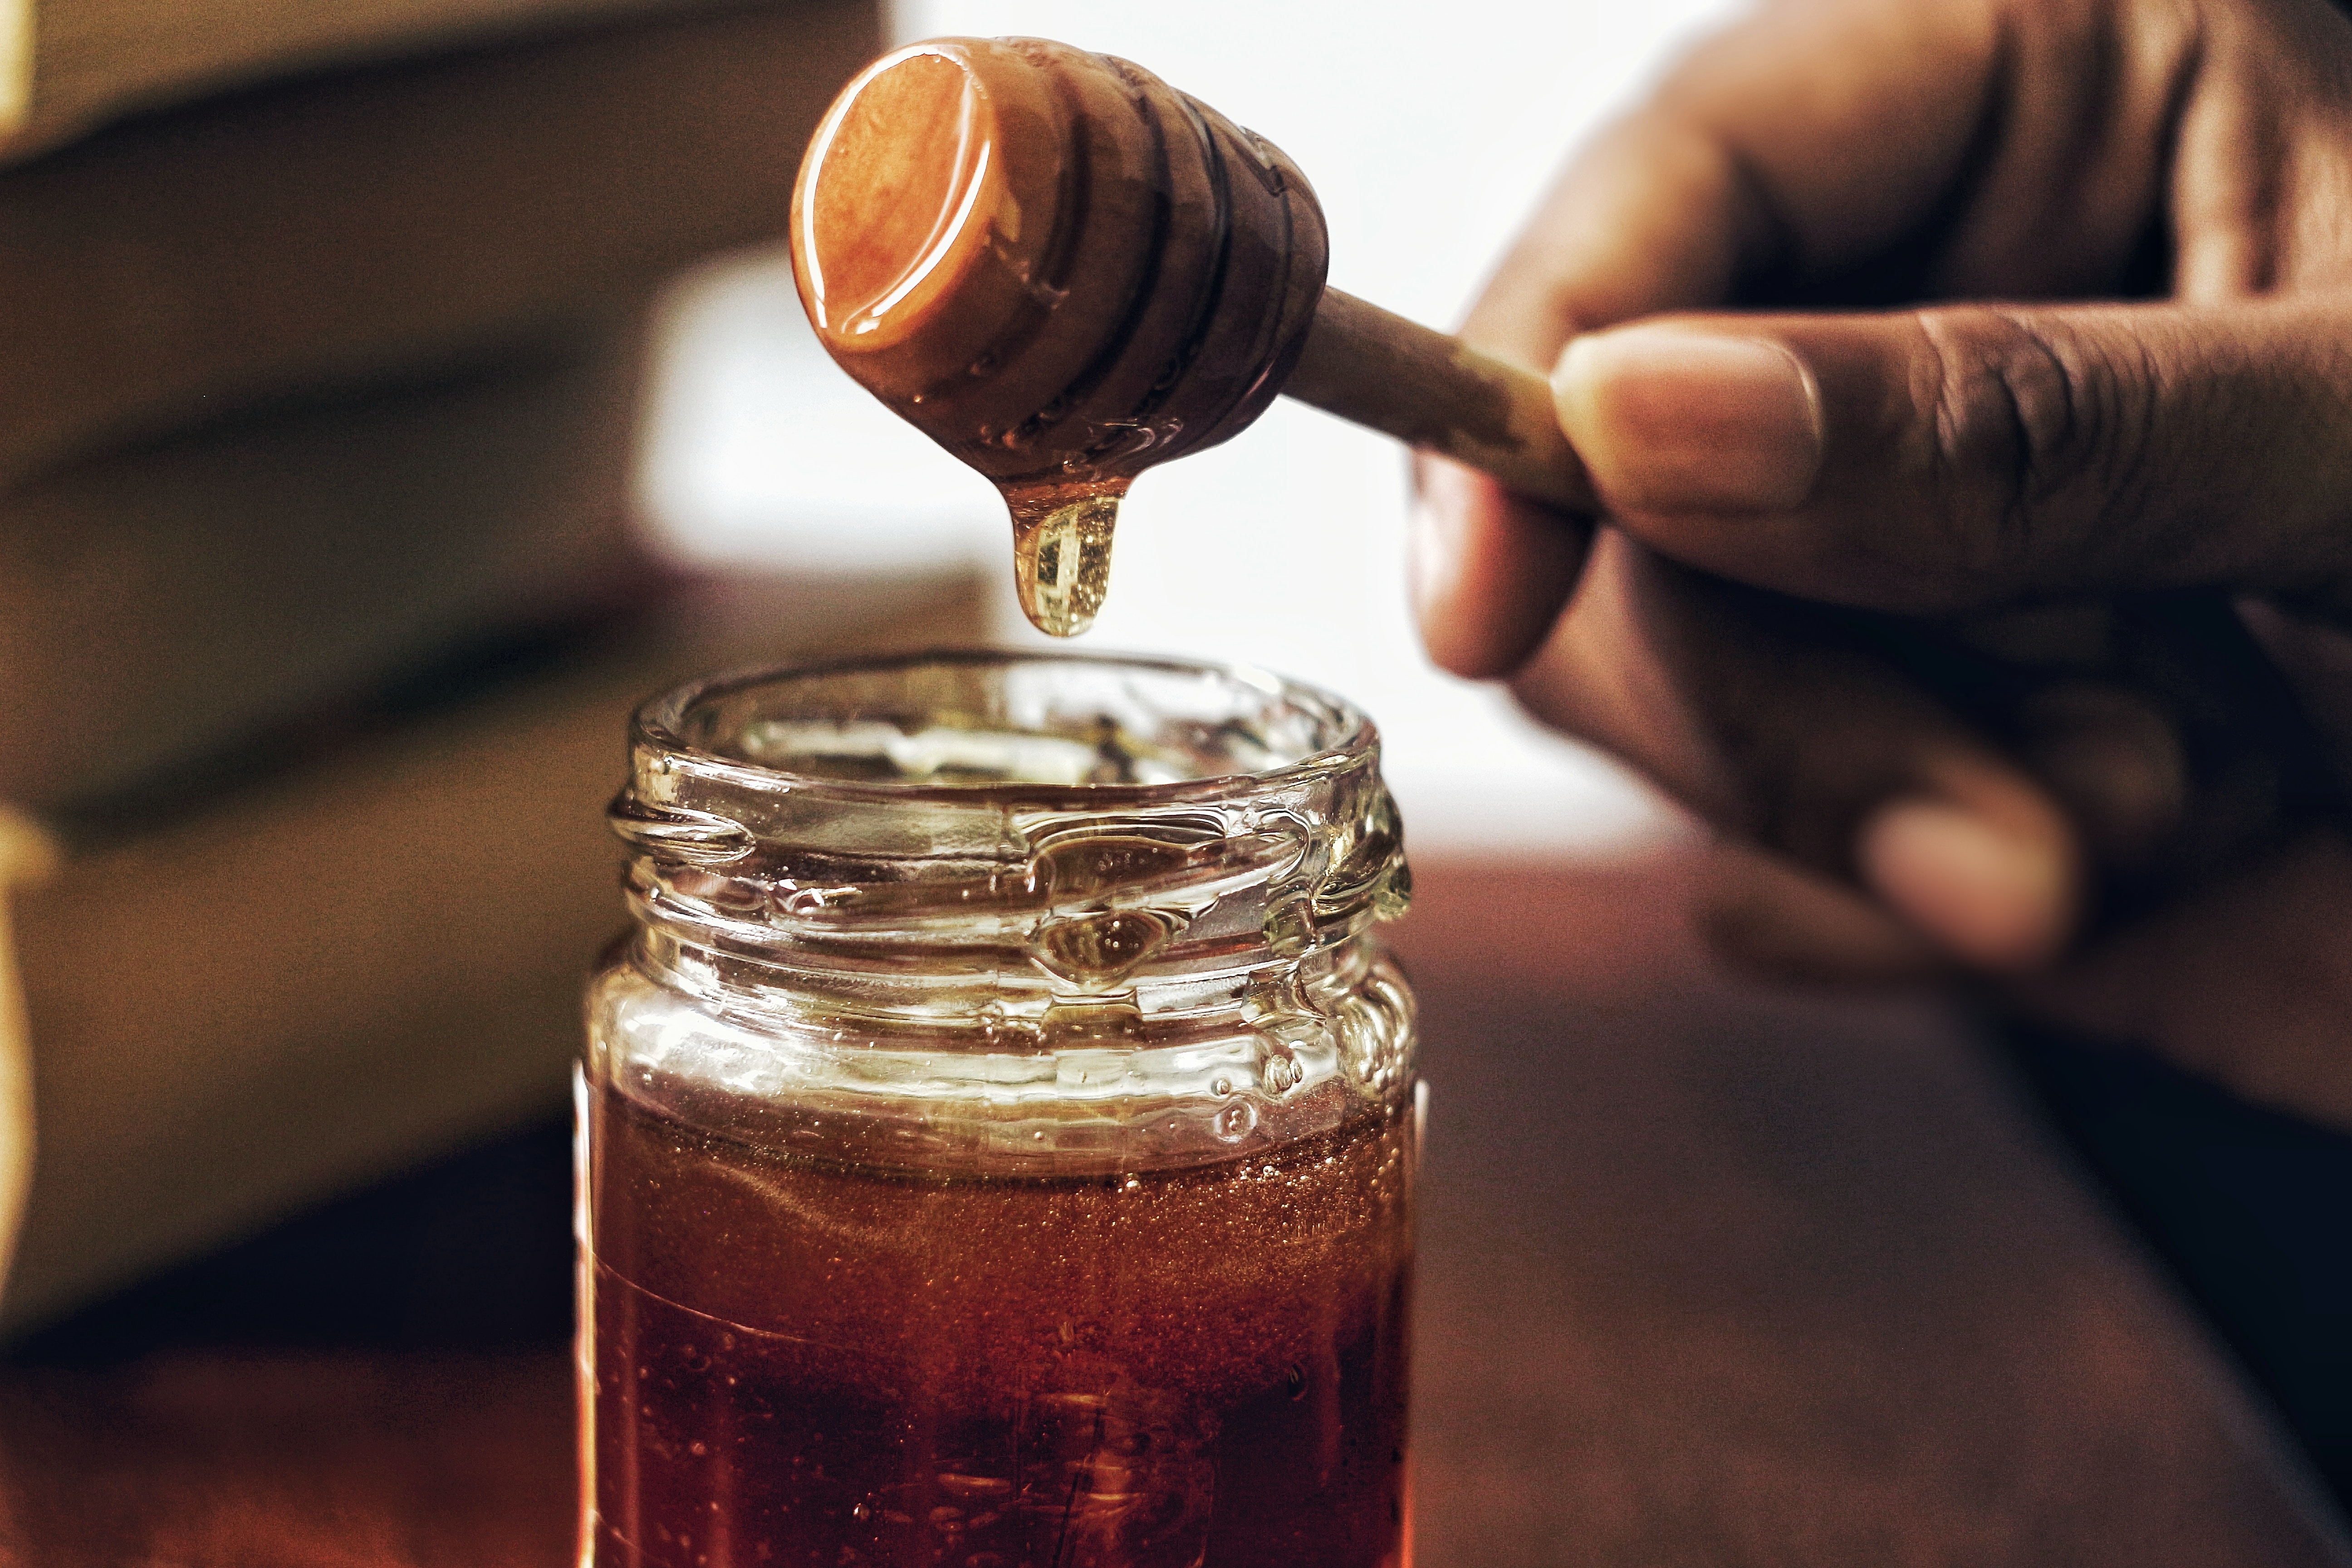 Honey in a bottle